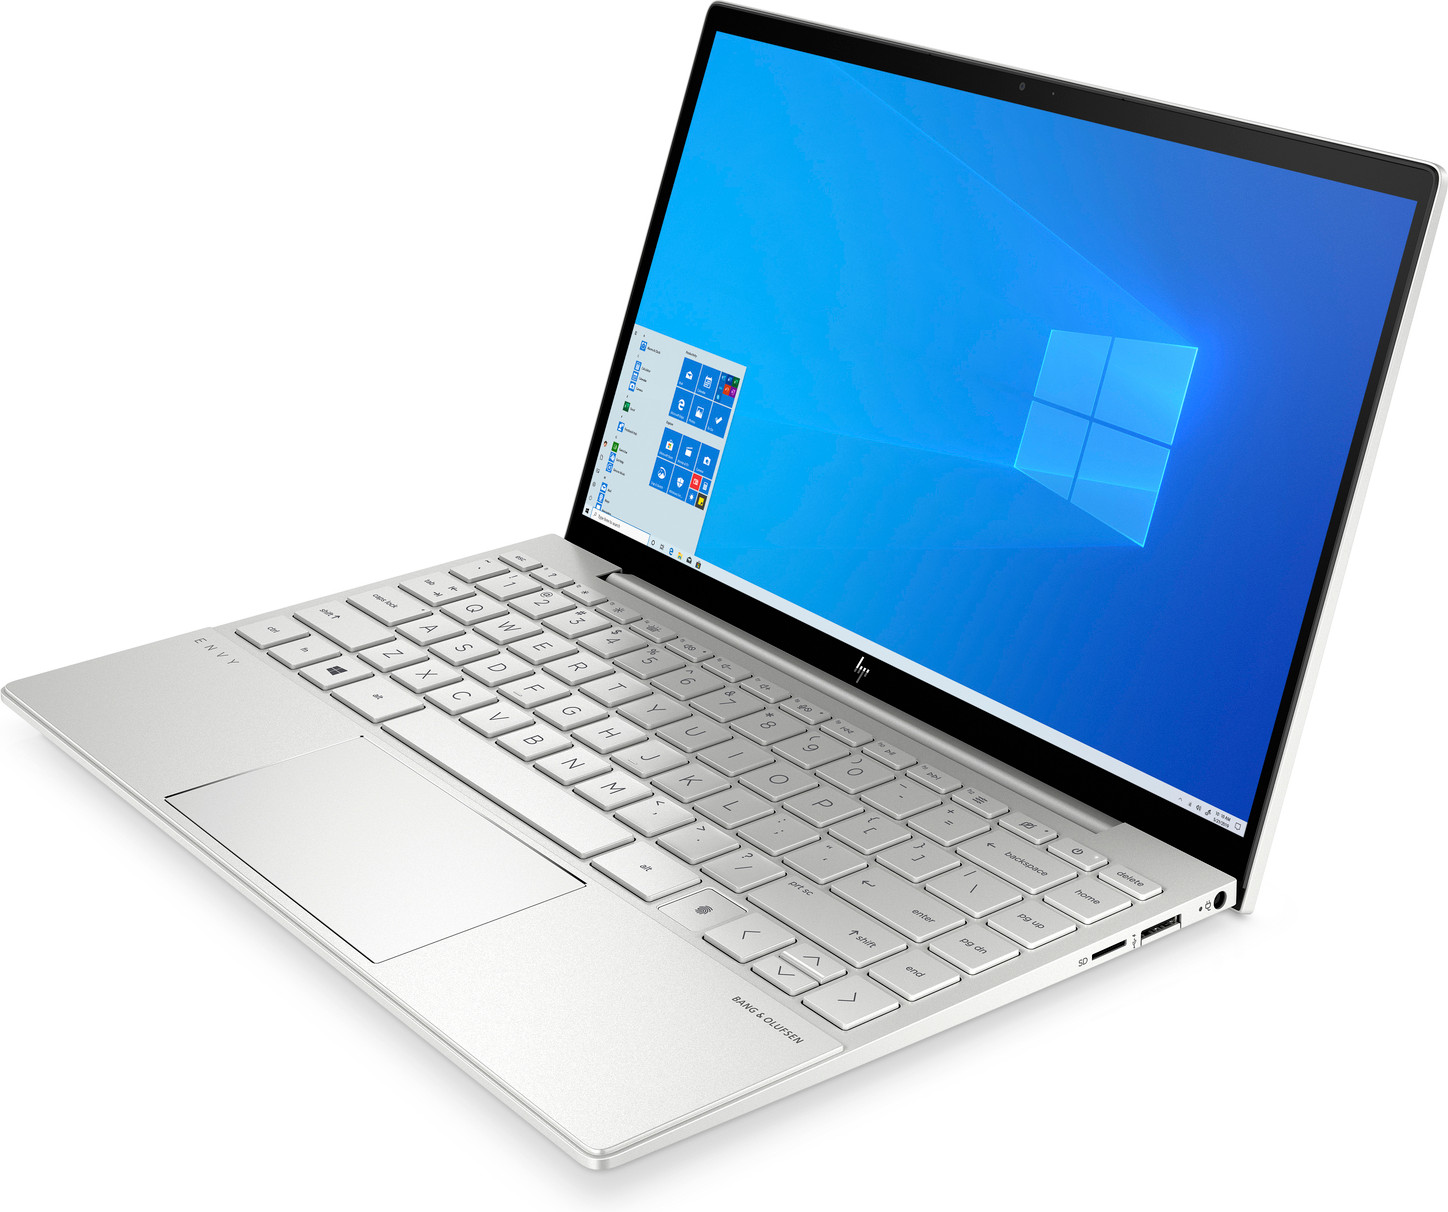 HP ENVY 13 - Top laptop voor middelbare scholieren en verder